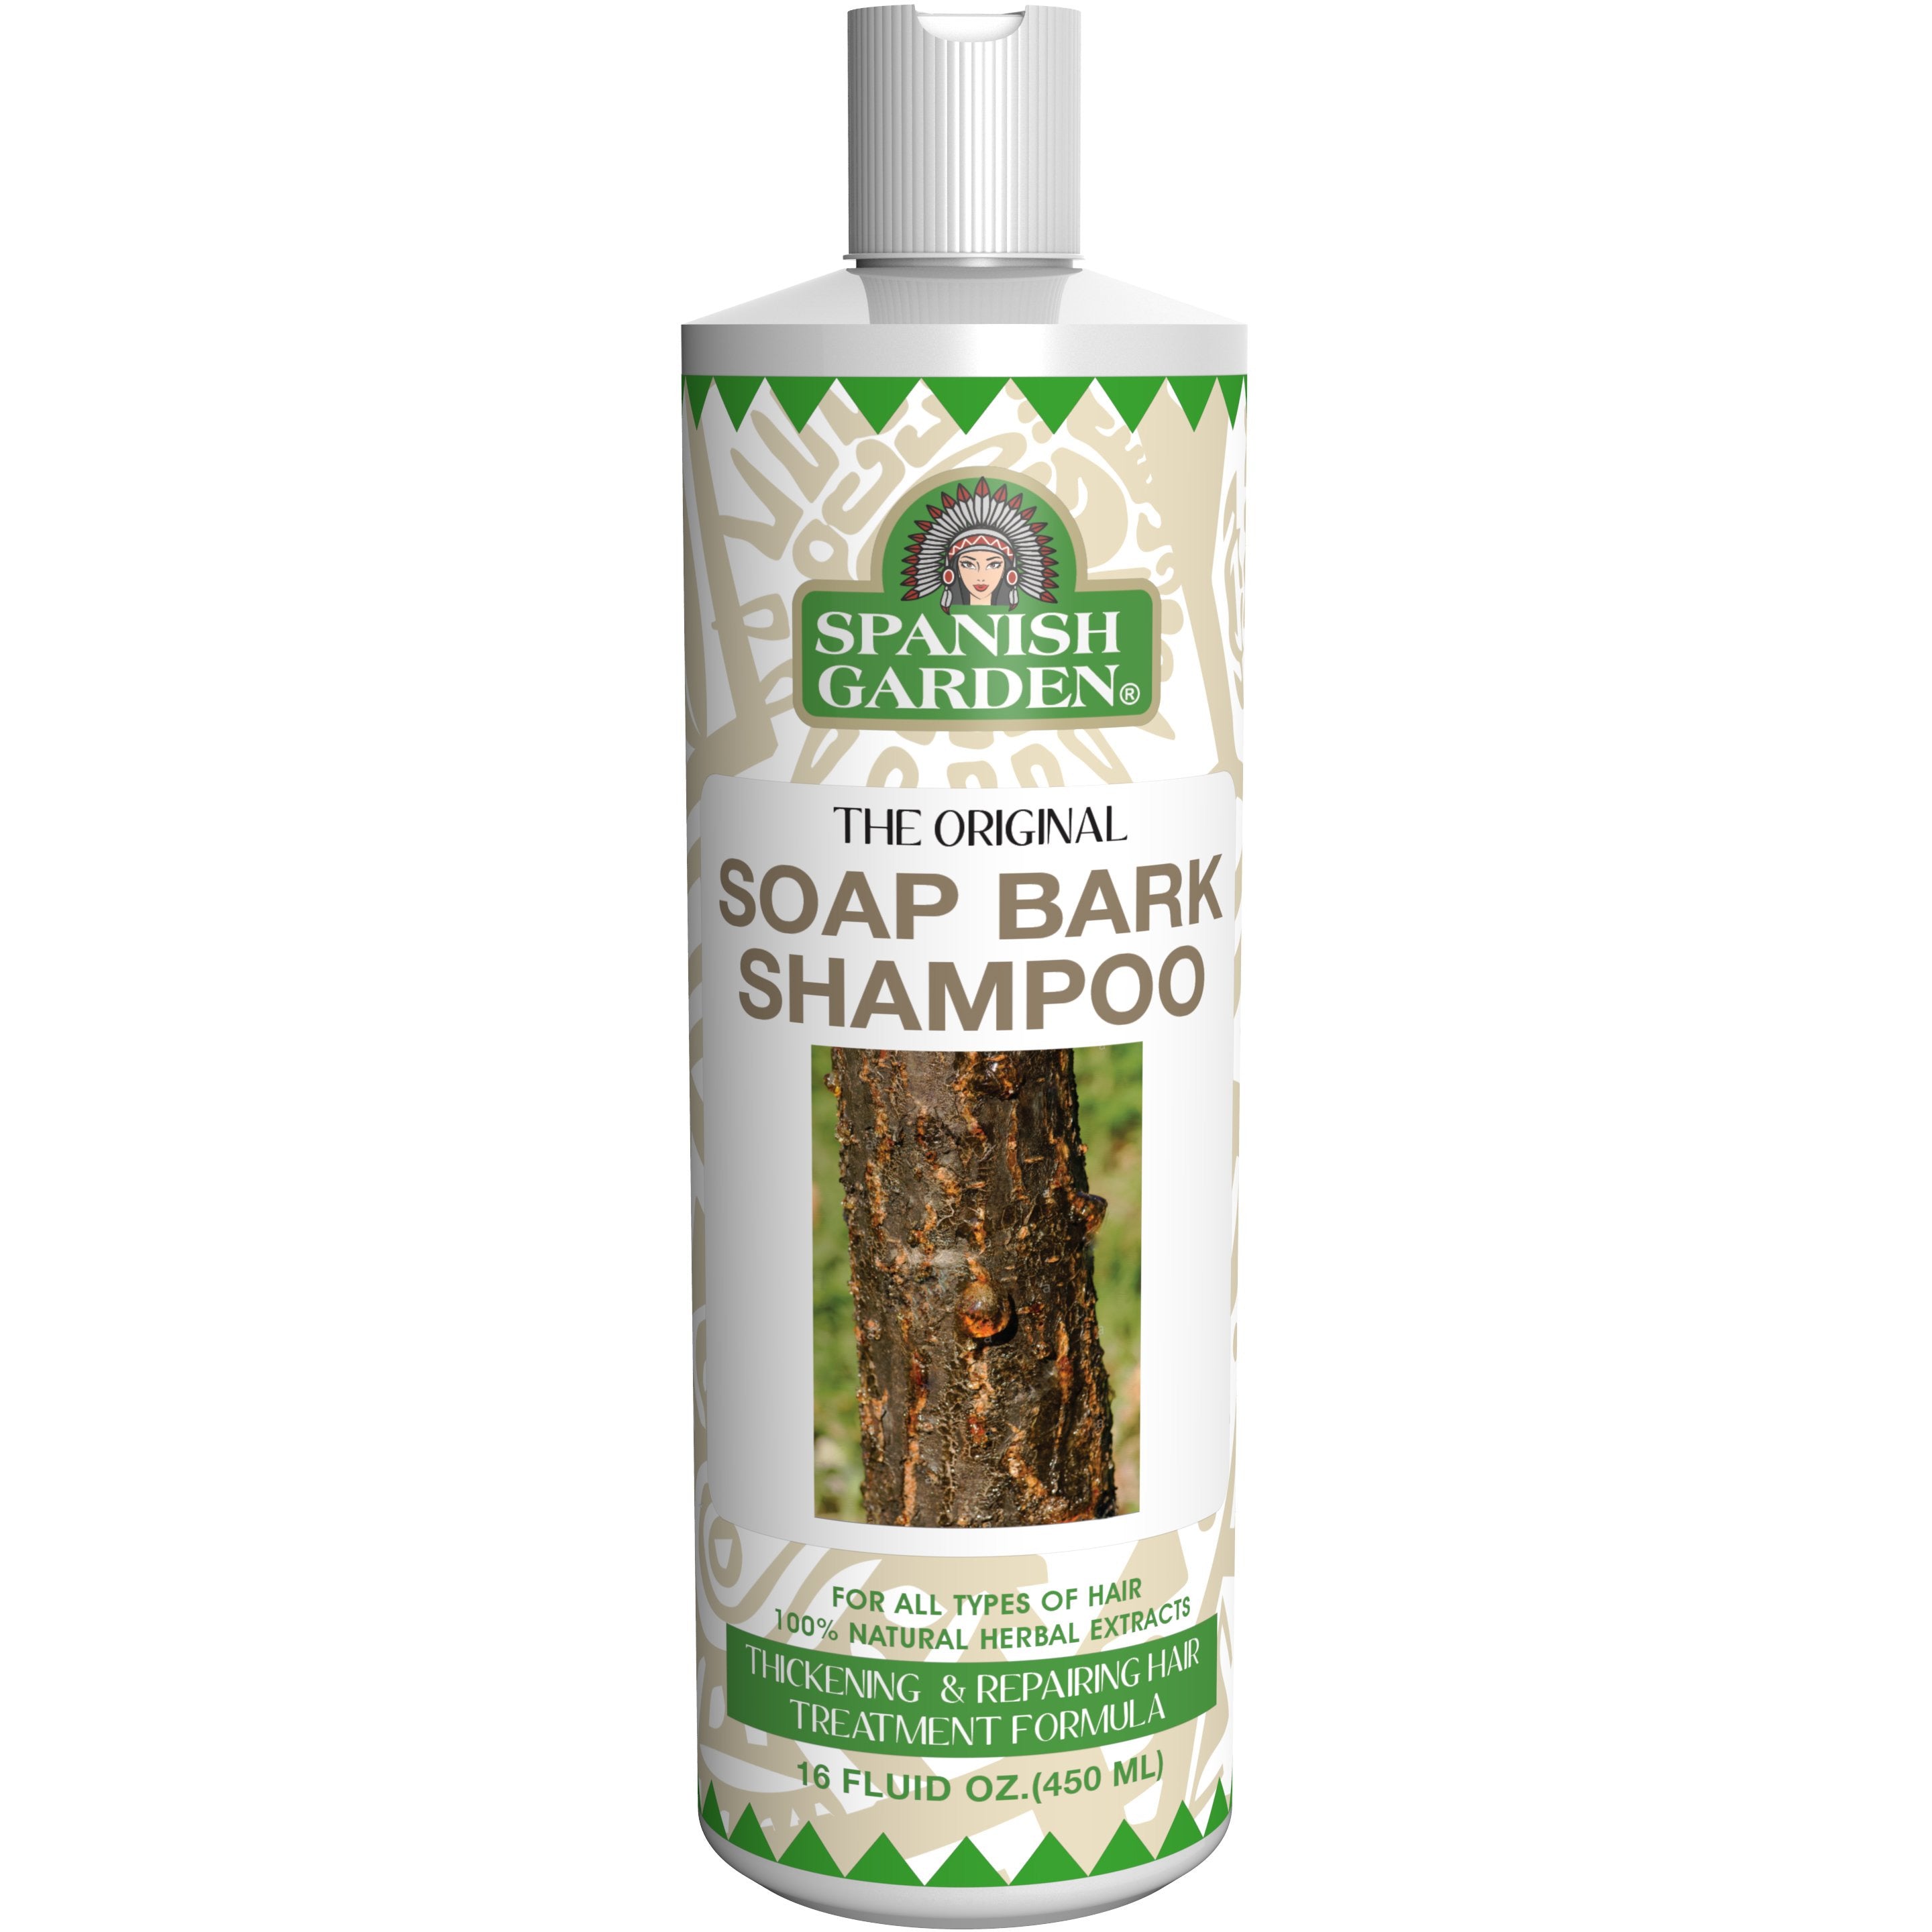 4th Ave Market: Spanish Garden Soak Bark Shampoo